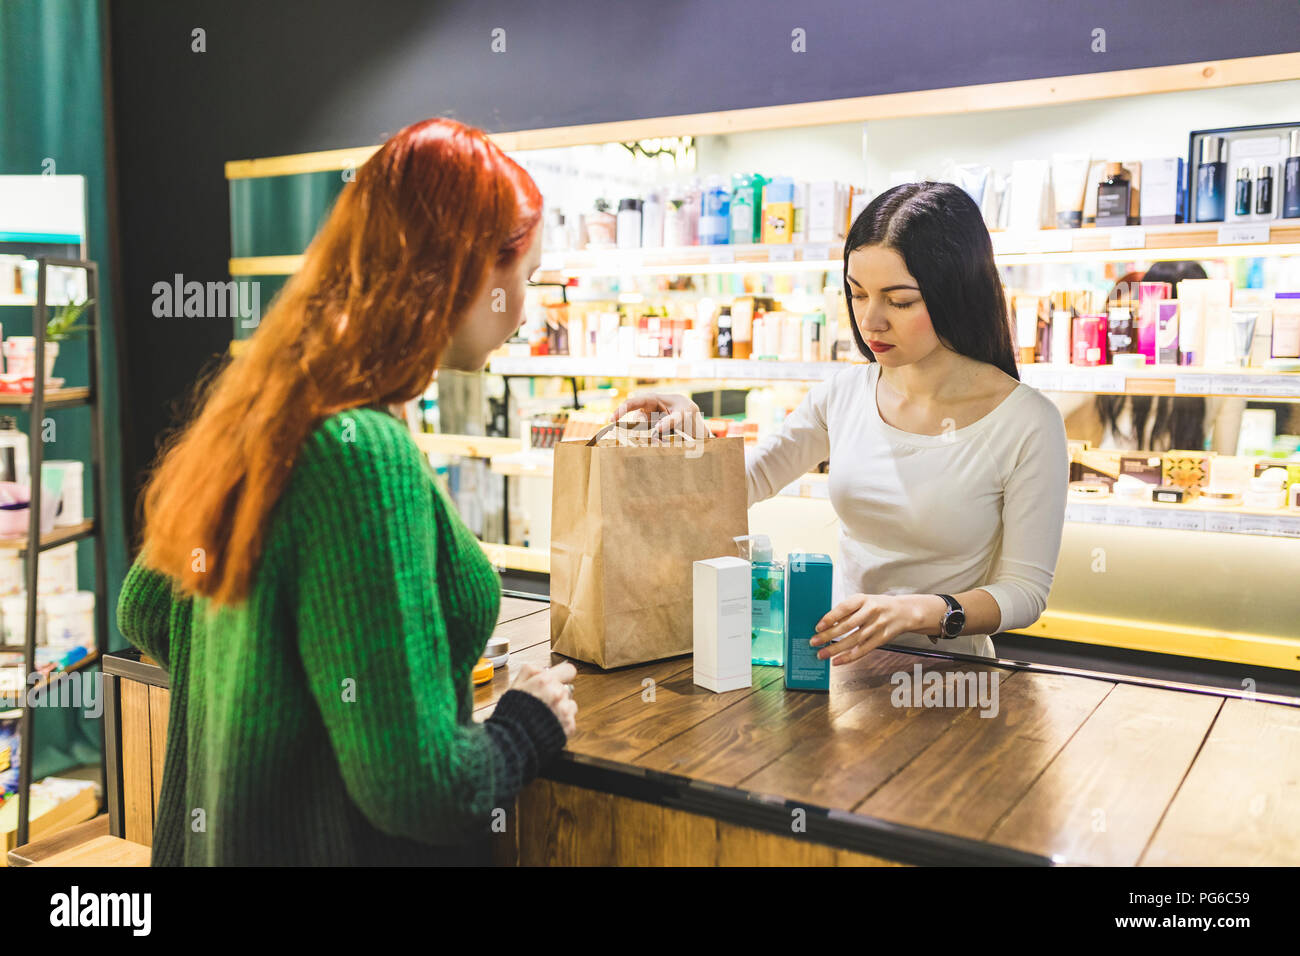 Verkäufer und Kunde Verpackung Produkte in Papier Beutel in einem kosmetik  Shop Stockfotografie - Alamy